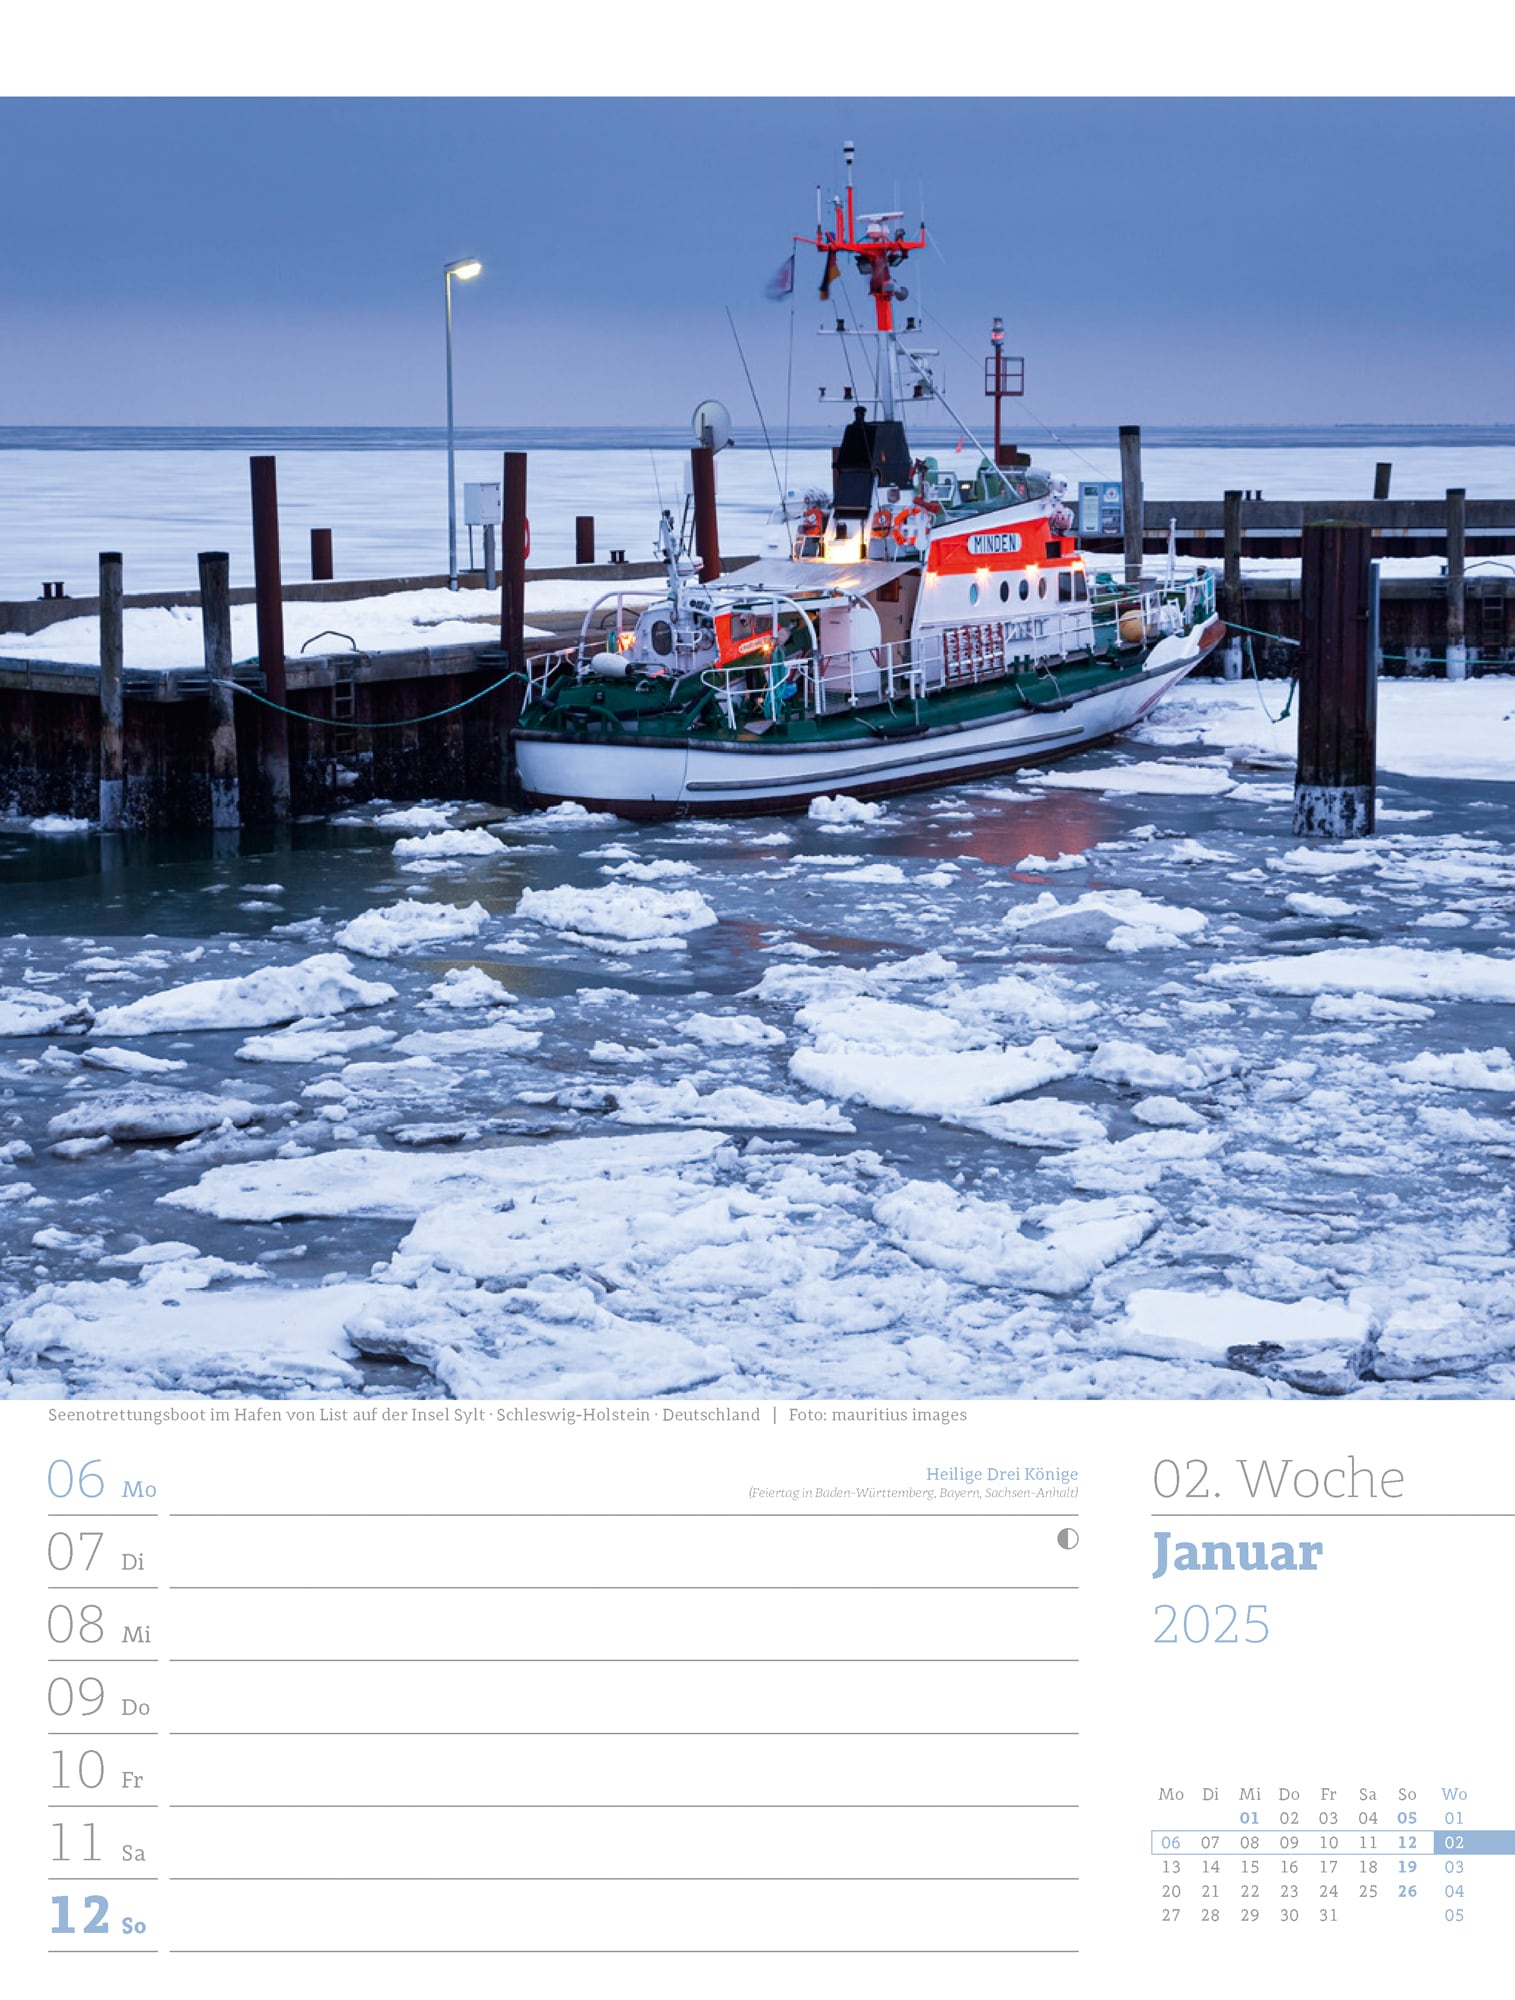 Ackermann Calendar At the Seaside 2025 - Weekly Planner - Inside View 03